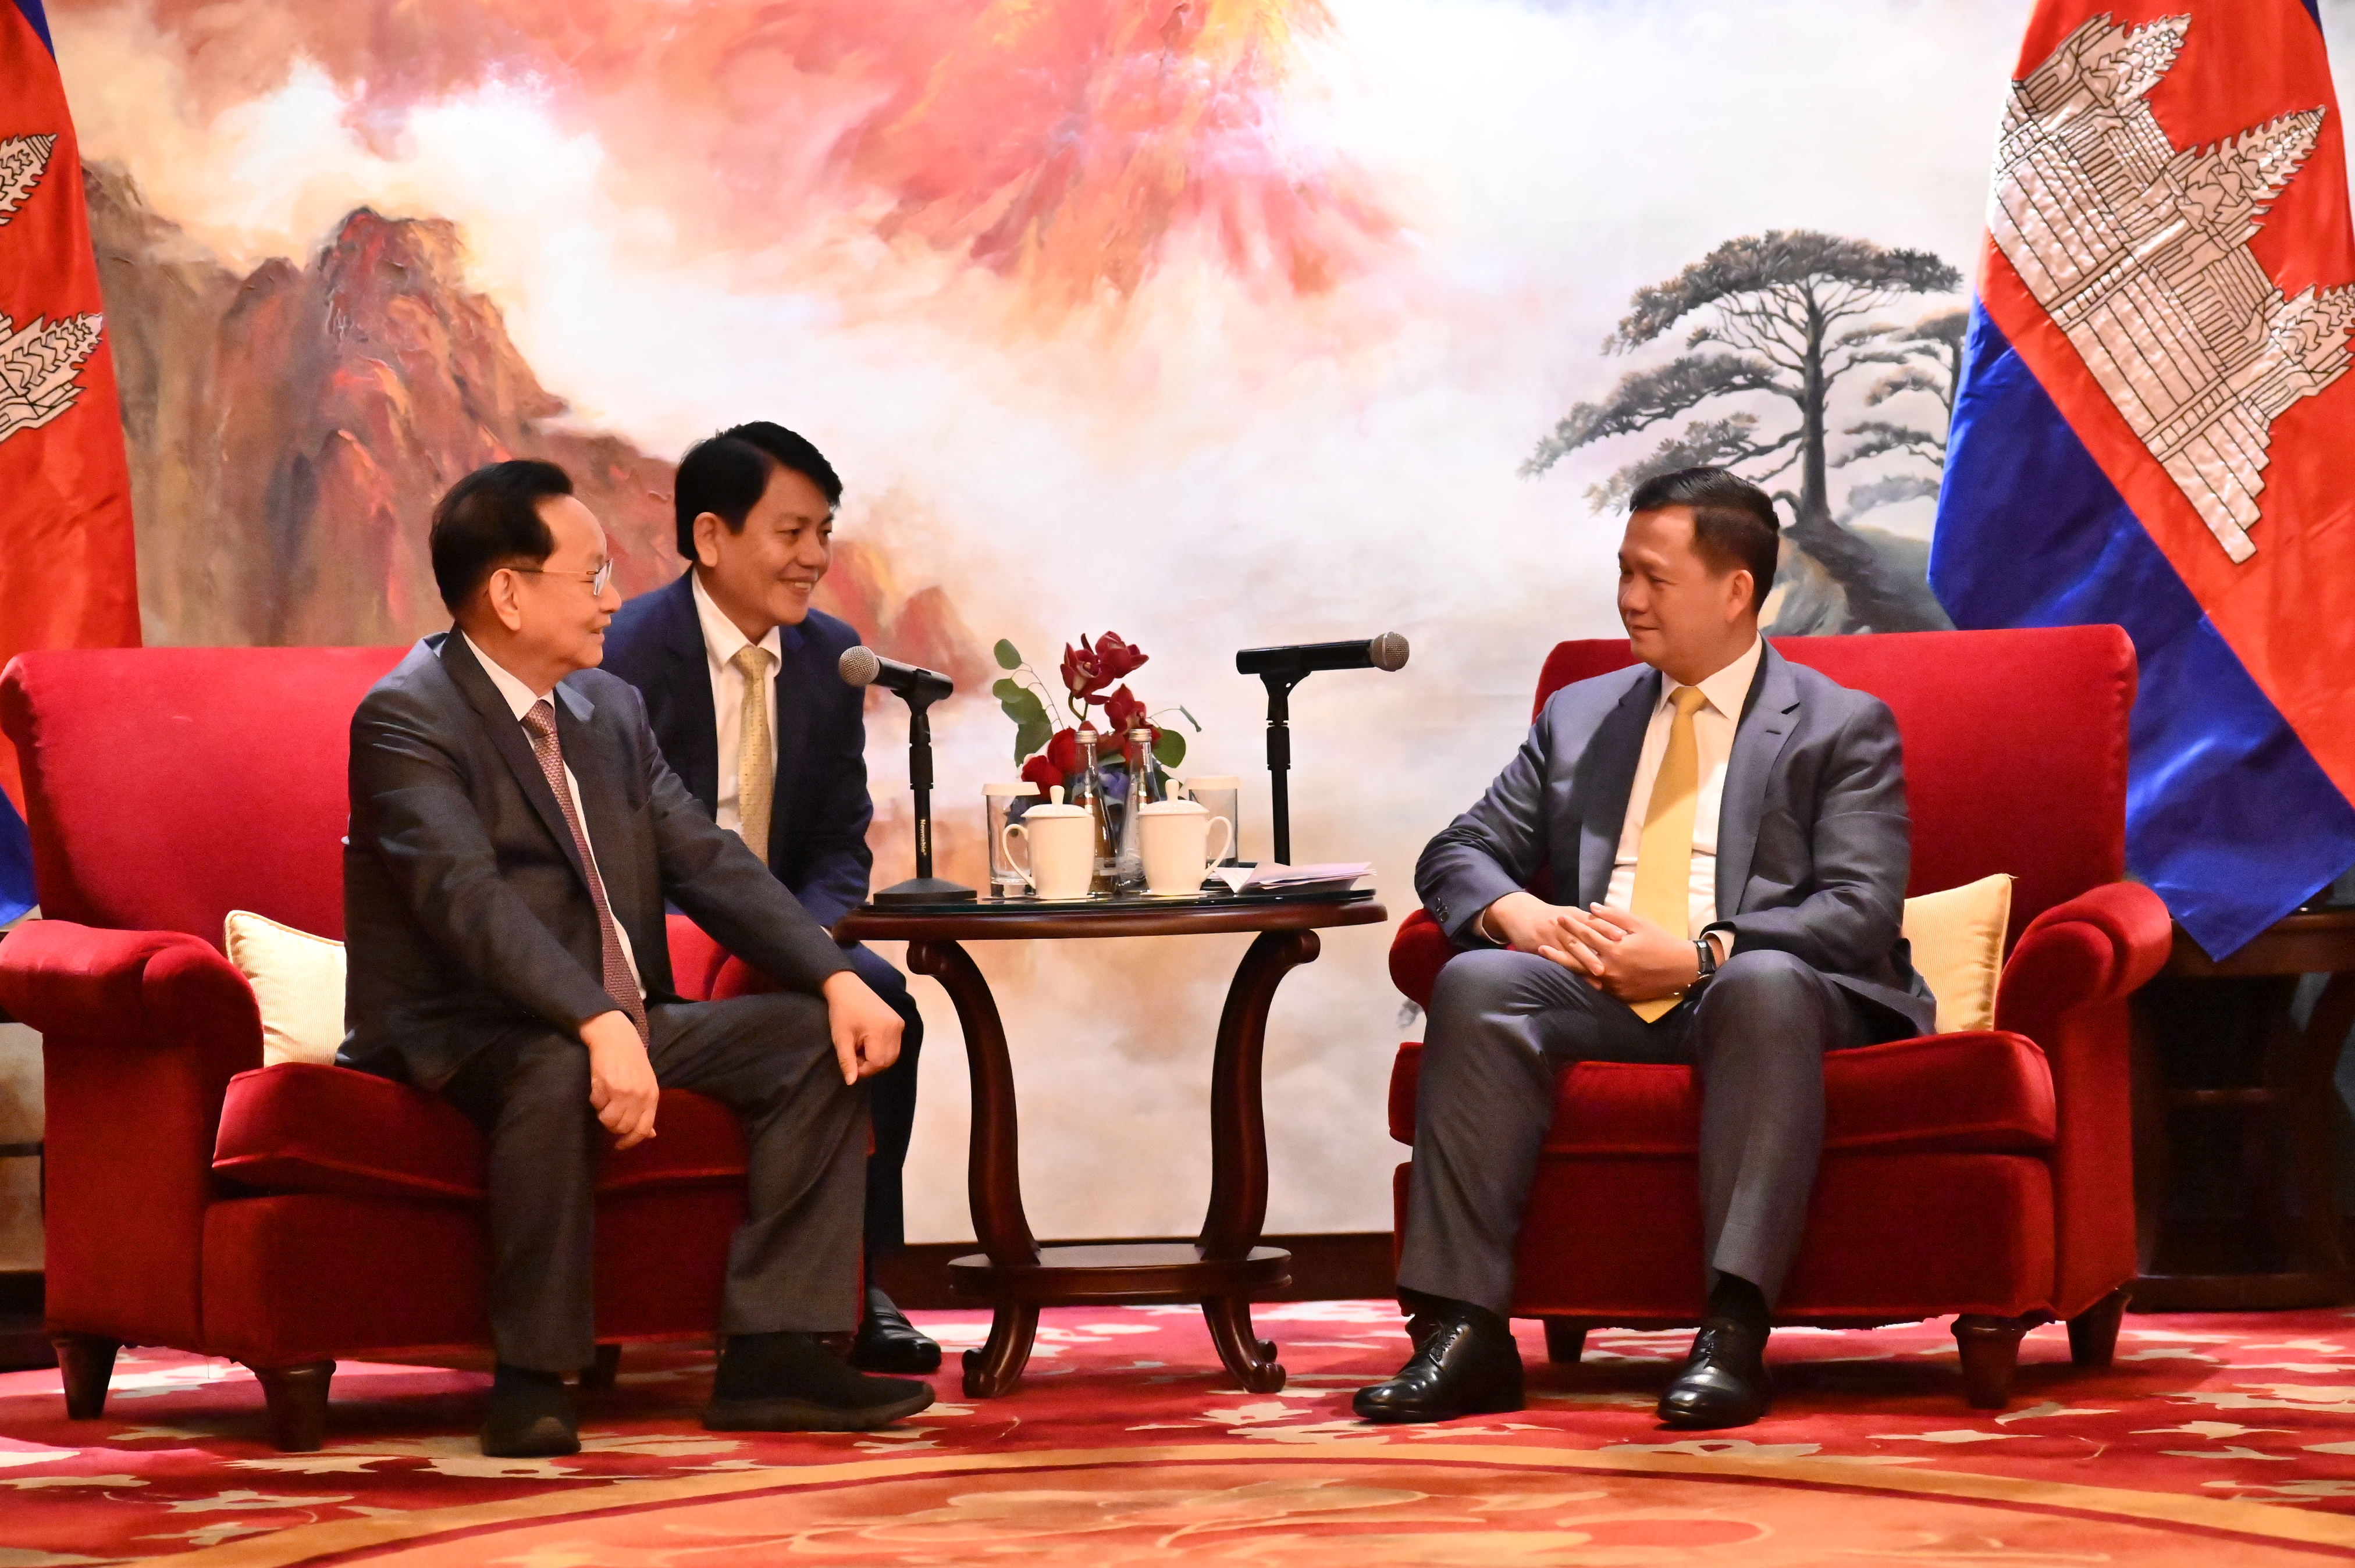 柬埔寨首相洪玛奈会见正大集团资深副董事长谢炳 表示将支持公司在柬投资项目